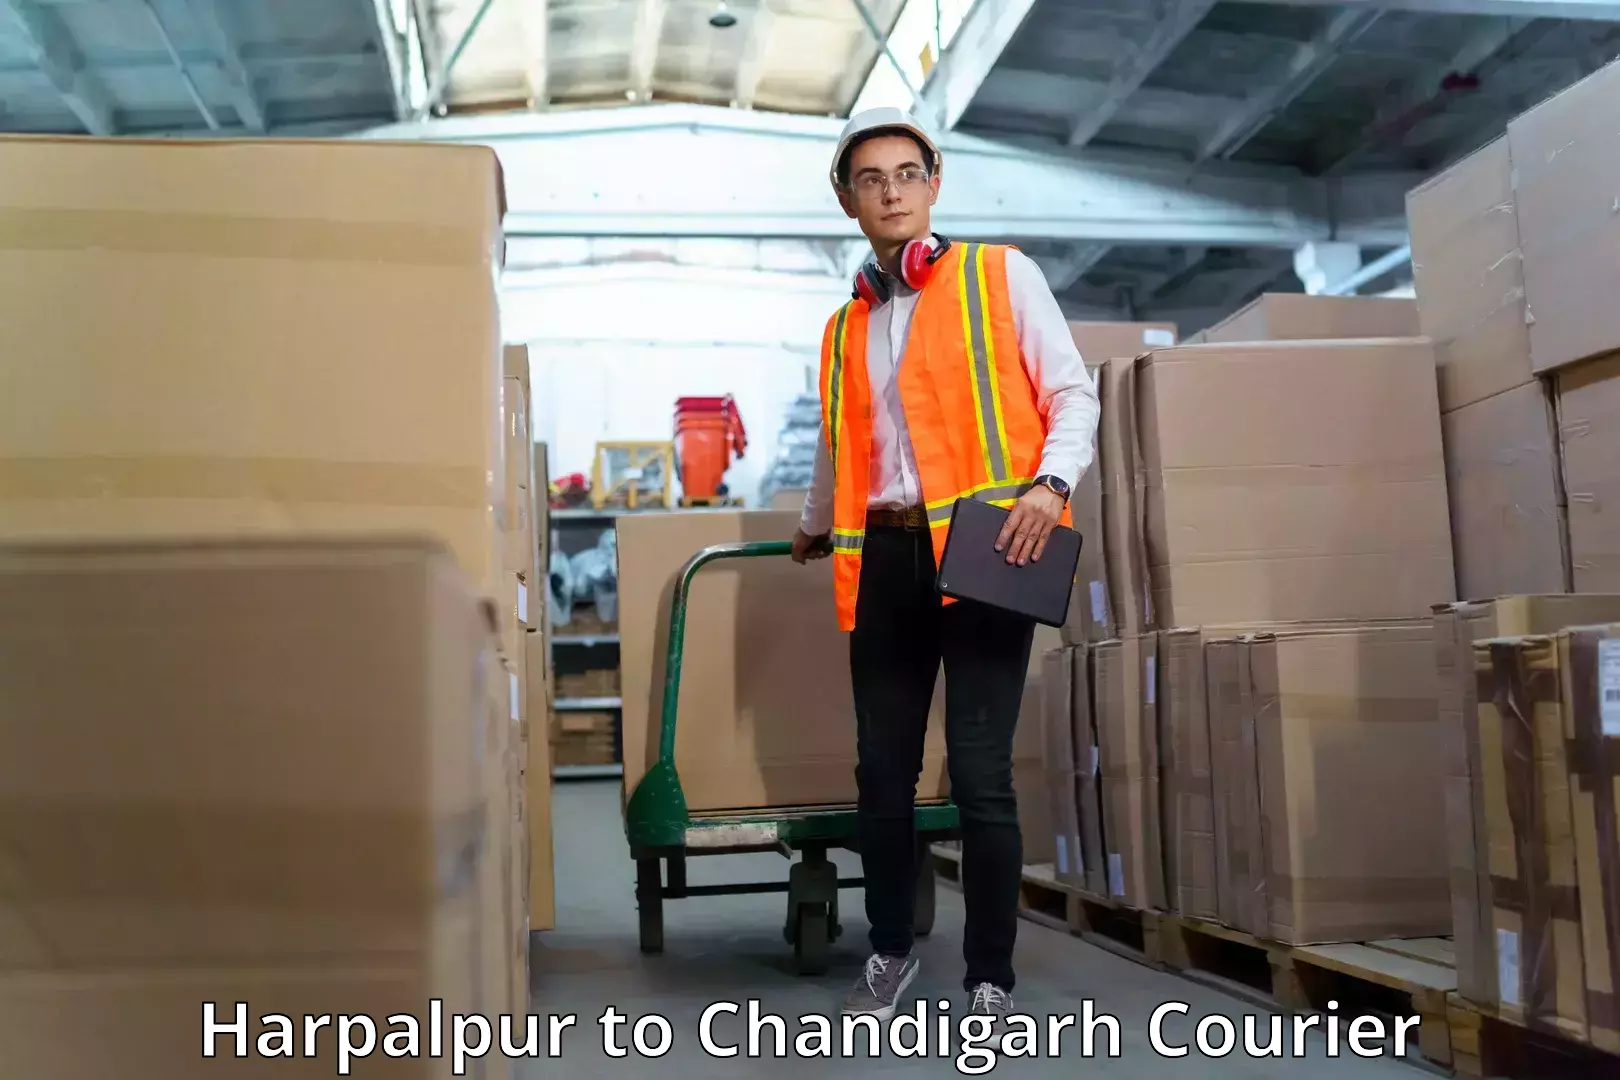 Urban courier service Harpalpur to Chandigarh